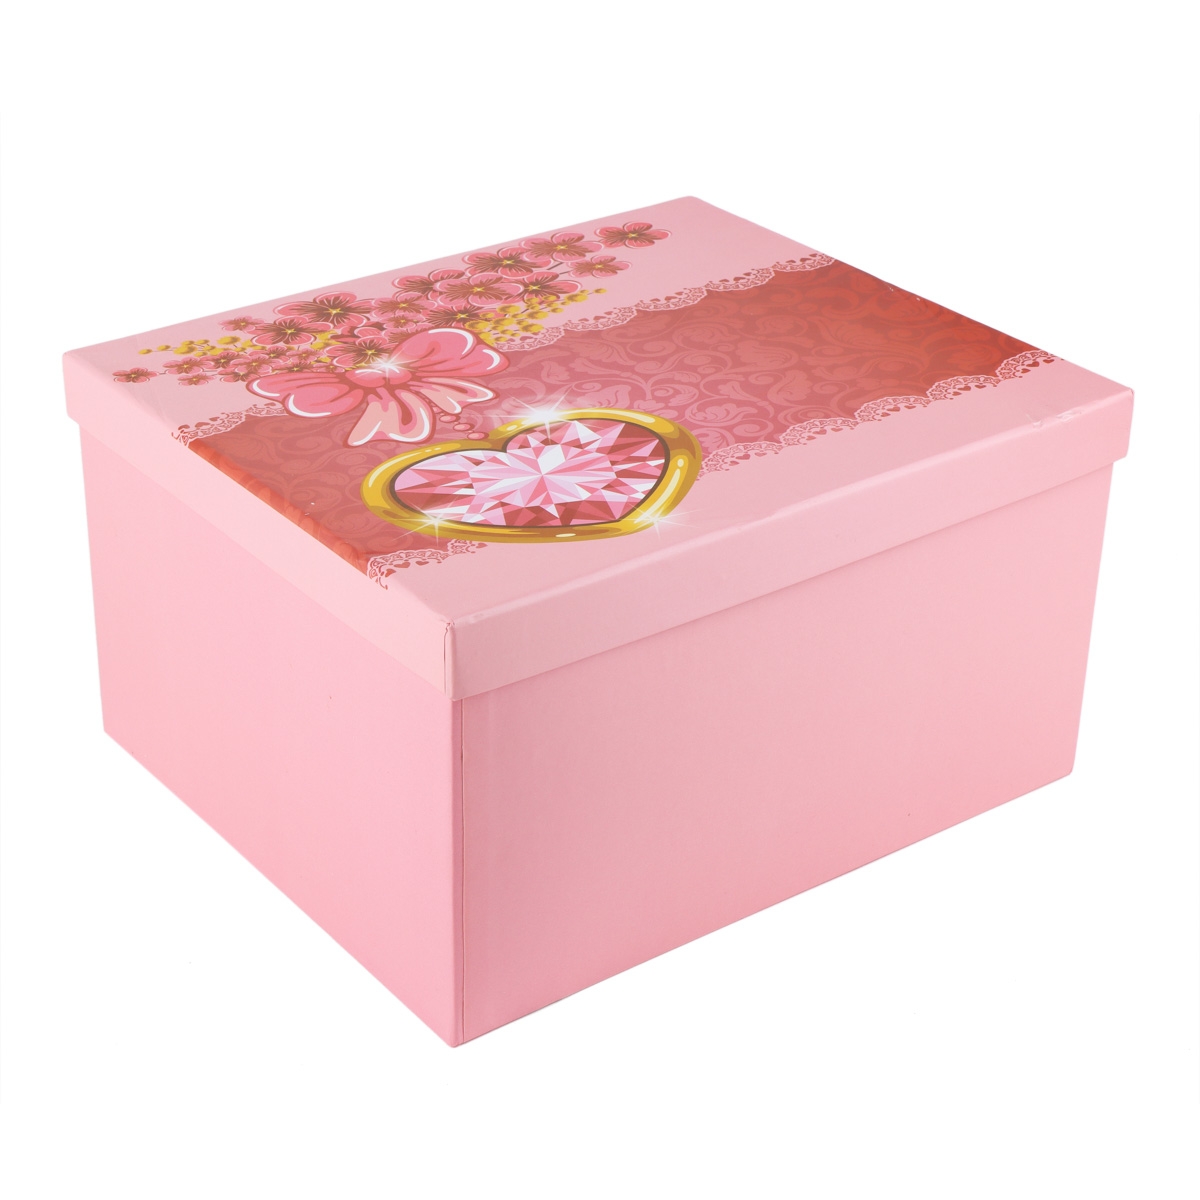 Набор из 10 коробок "Романтический сюрприз", розовый (8929-502), Картон, Elisey